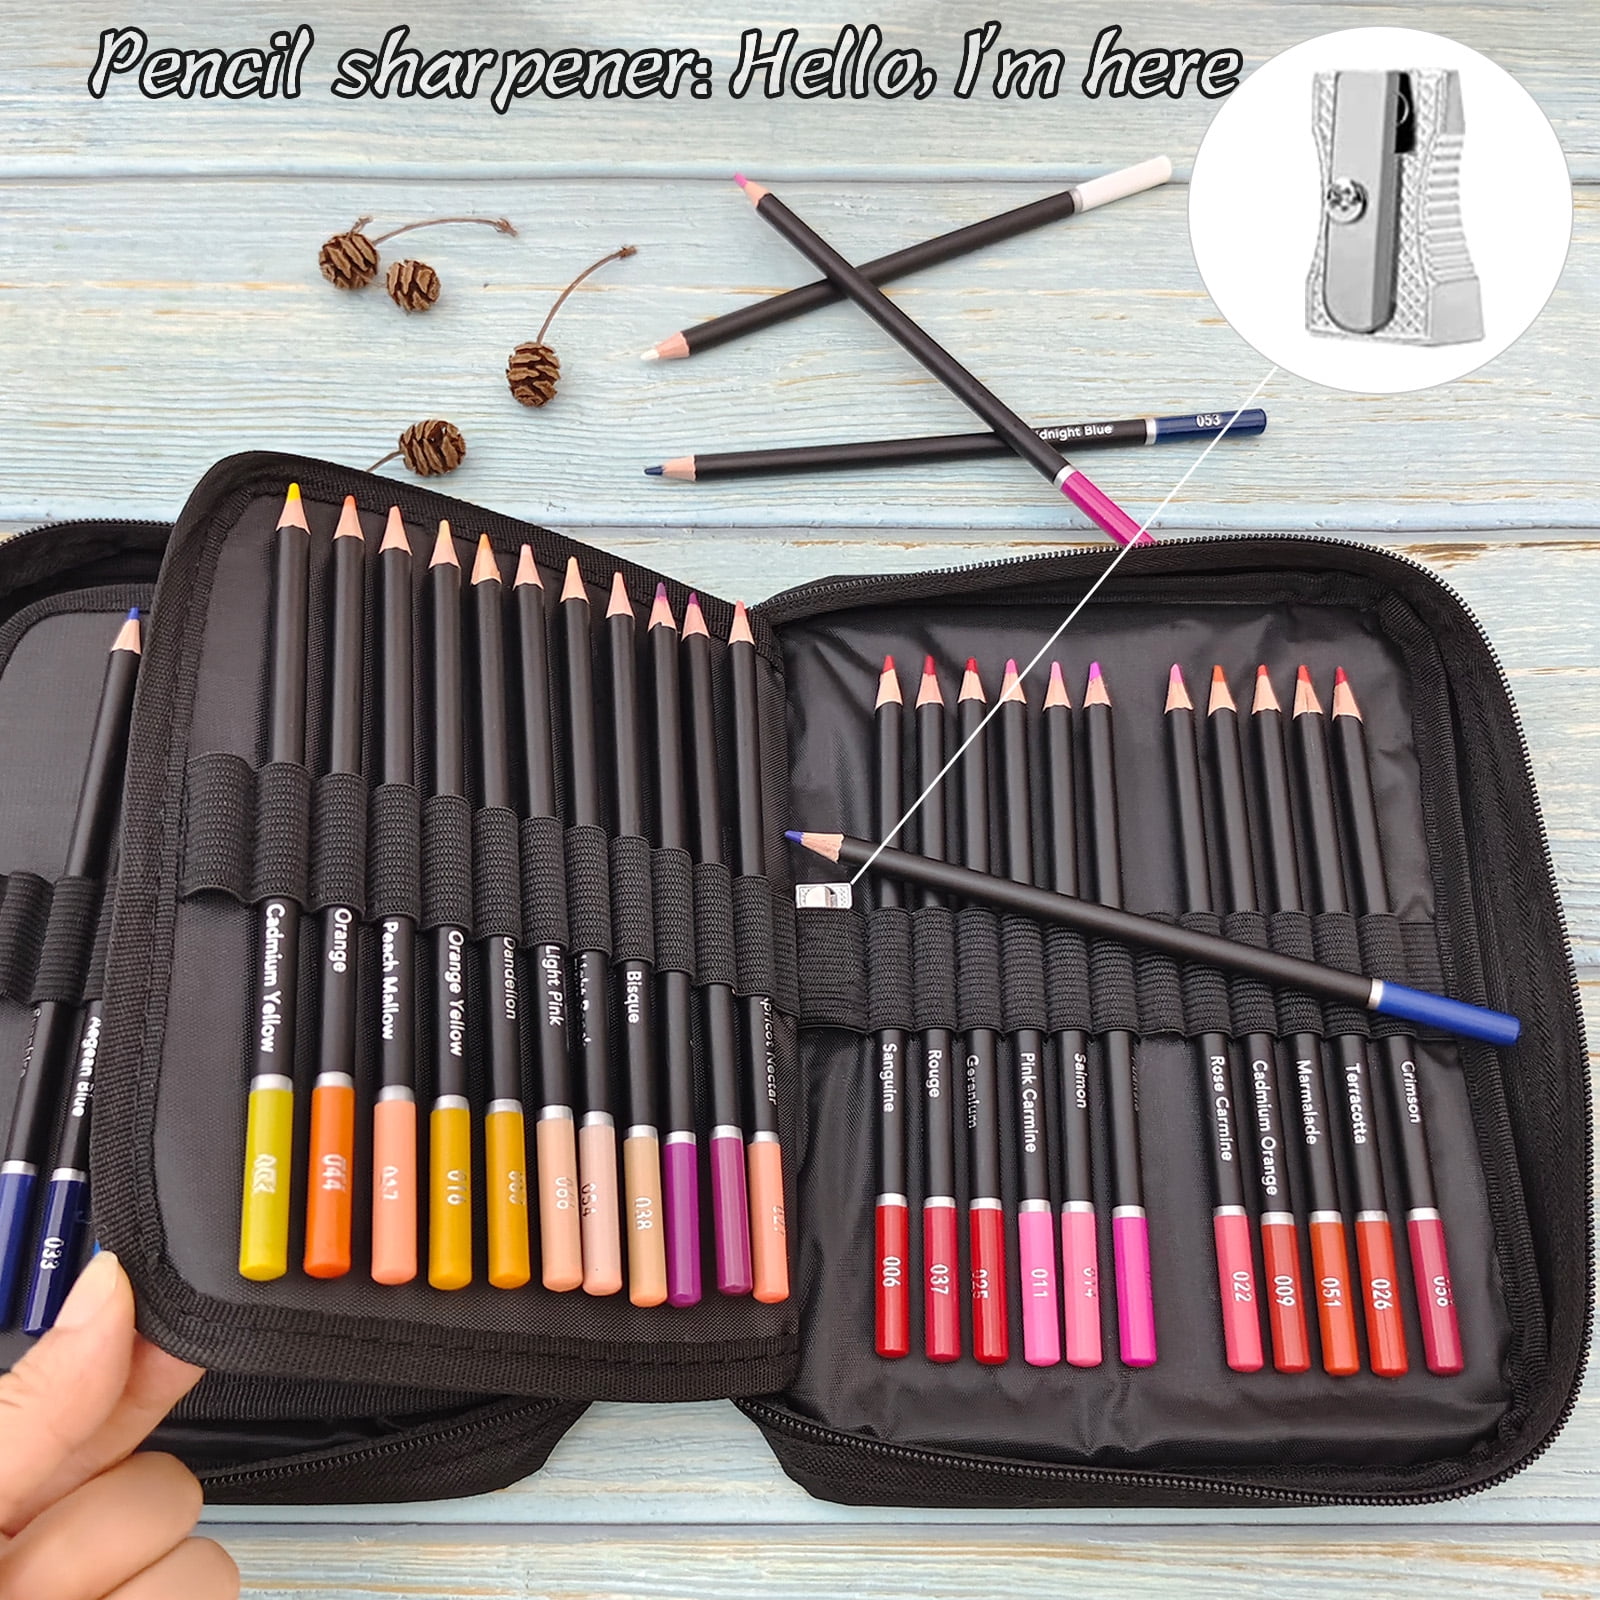  尼奥尼 NYONI Professional Colored Pencils, Colored Pencils for  Adult Coloring Set of 120 Colors, Drawing Pencils for Beginners & Pro  Artists, Protected and Organized in Presentation Tin Box : Arts